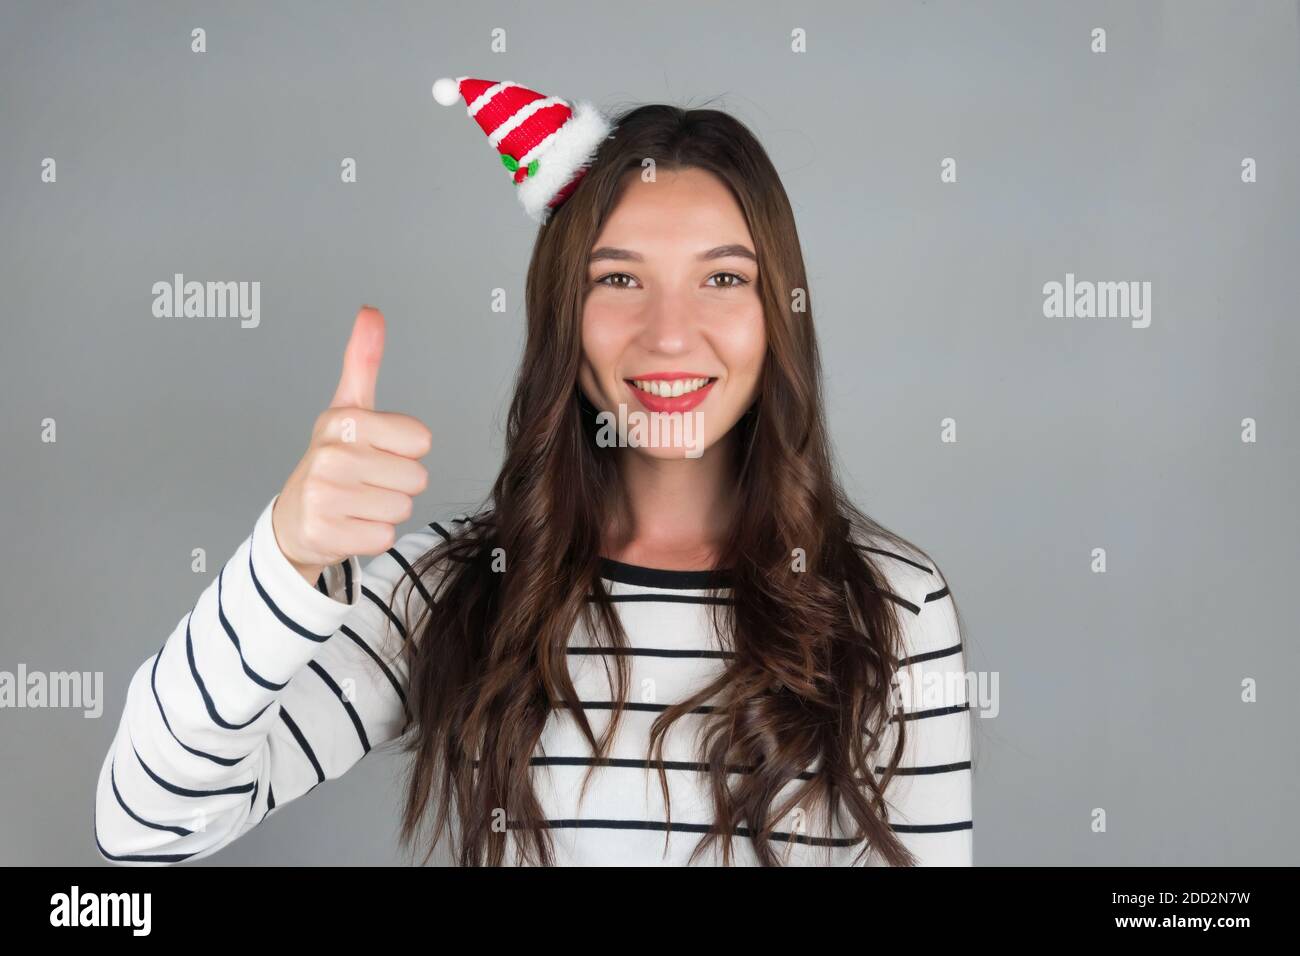 Ein junges Mädchen mit weihnachtlicher Dekoration im Haar posiert für ein Auto. Halten Sie Ihre Finger oben, positive Emotionen. Hochwertige Fotos Stockfoto